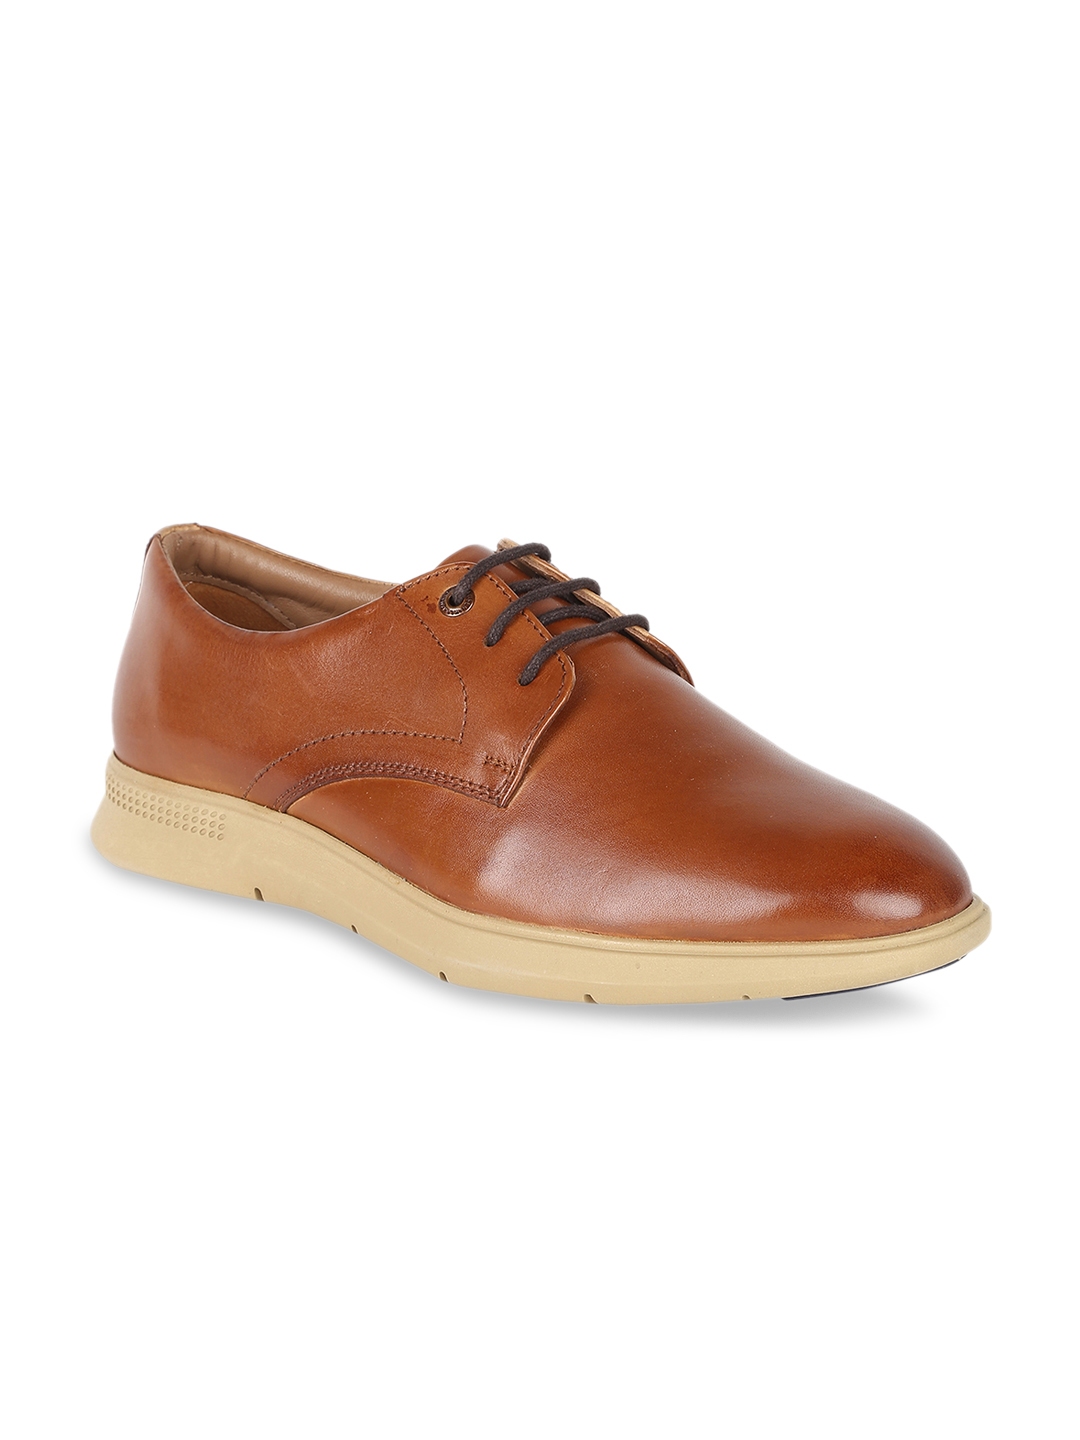 Buy Van Heusen Men Brown Derbys - Casual Shoes for Men 9486339 | Myntra